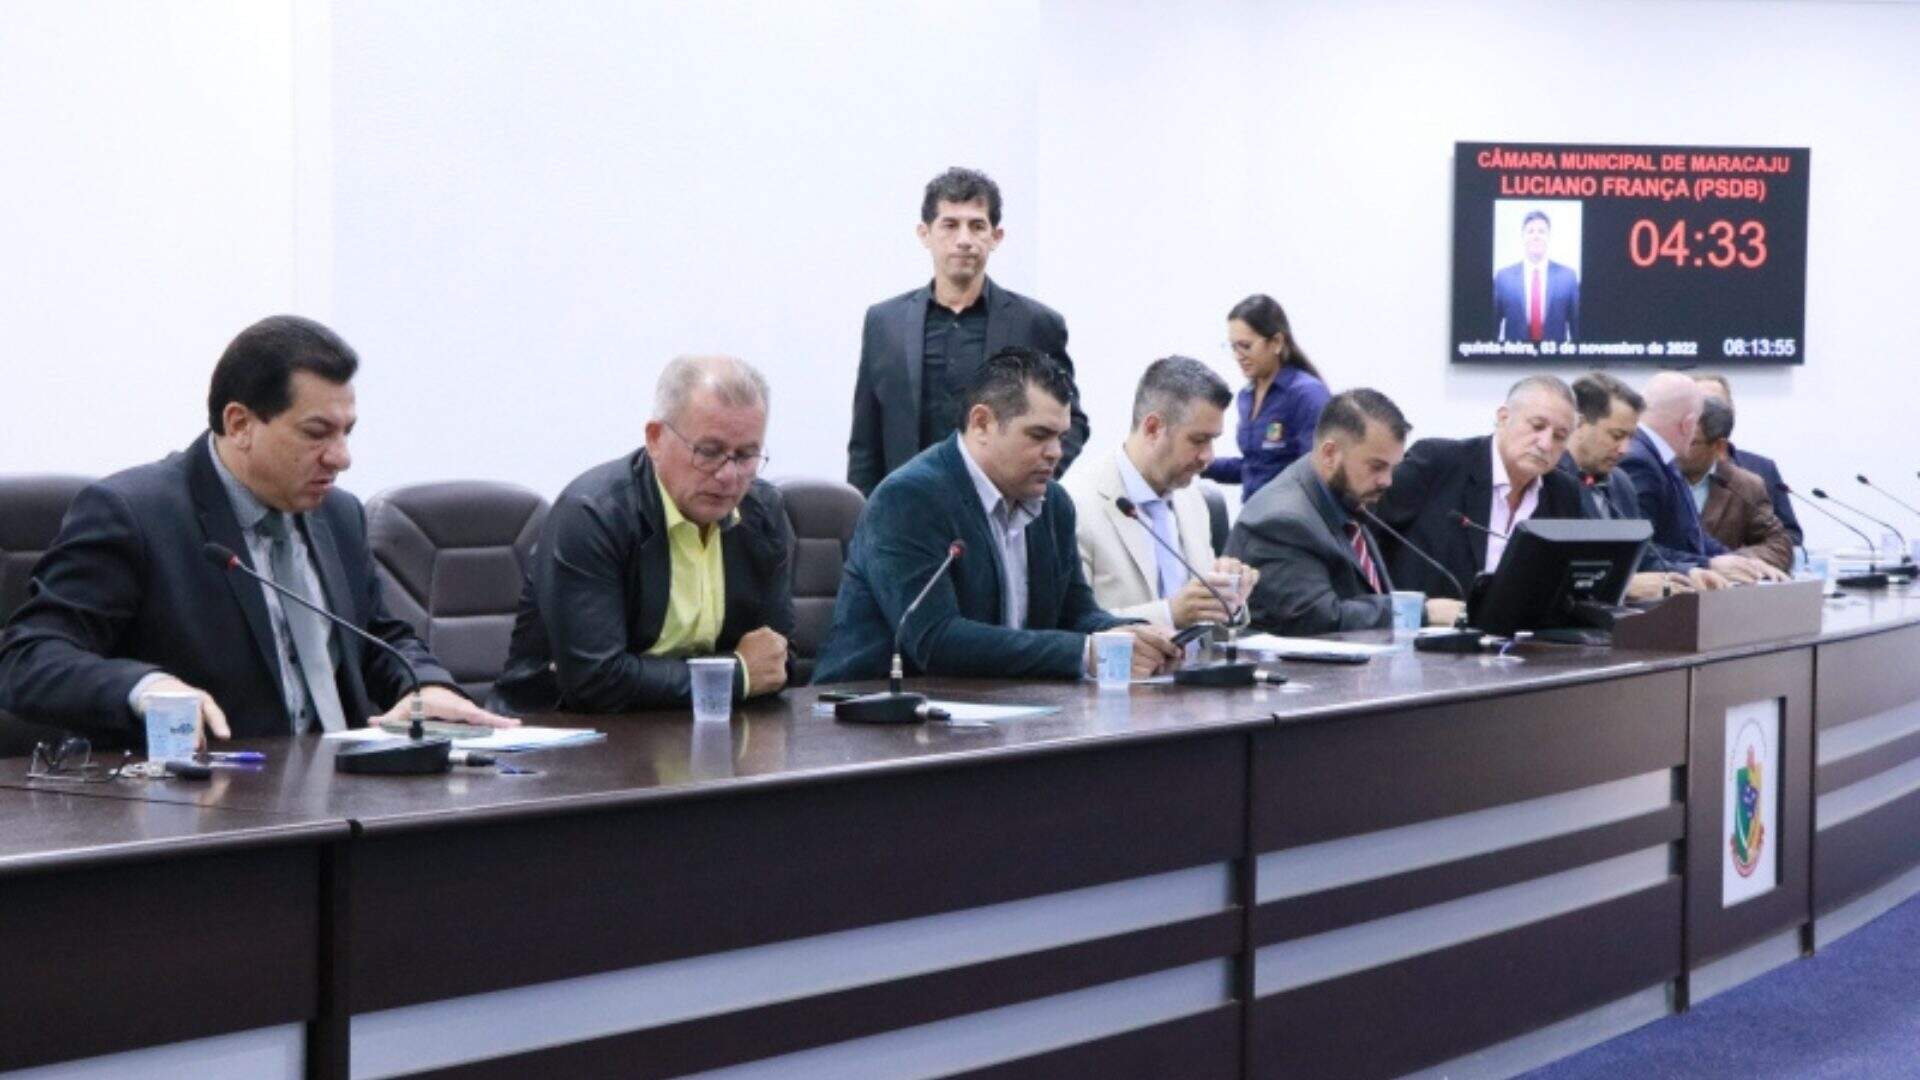 Câmara de Maracaju diz que suspensão de oito mandatos é temporária